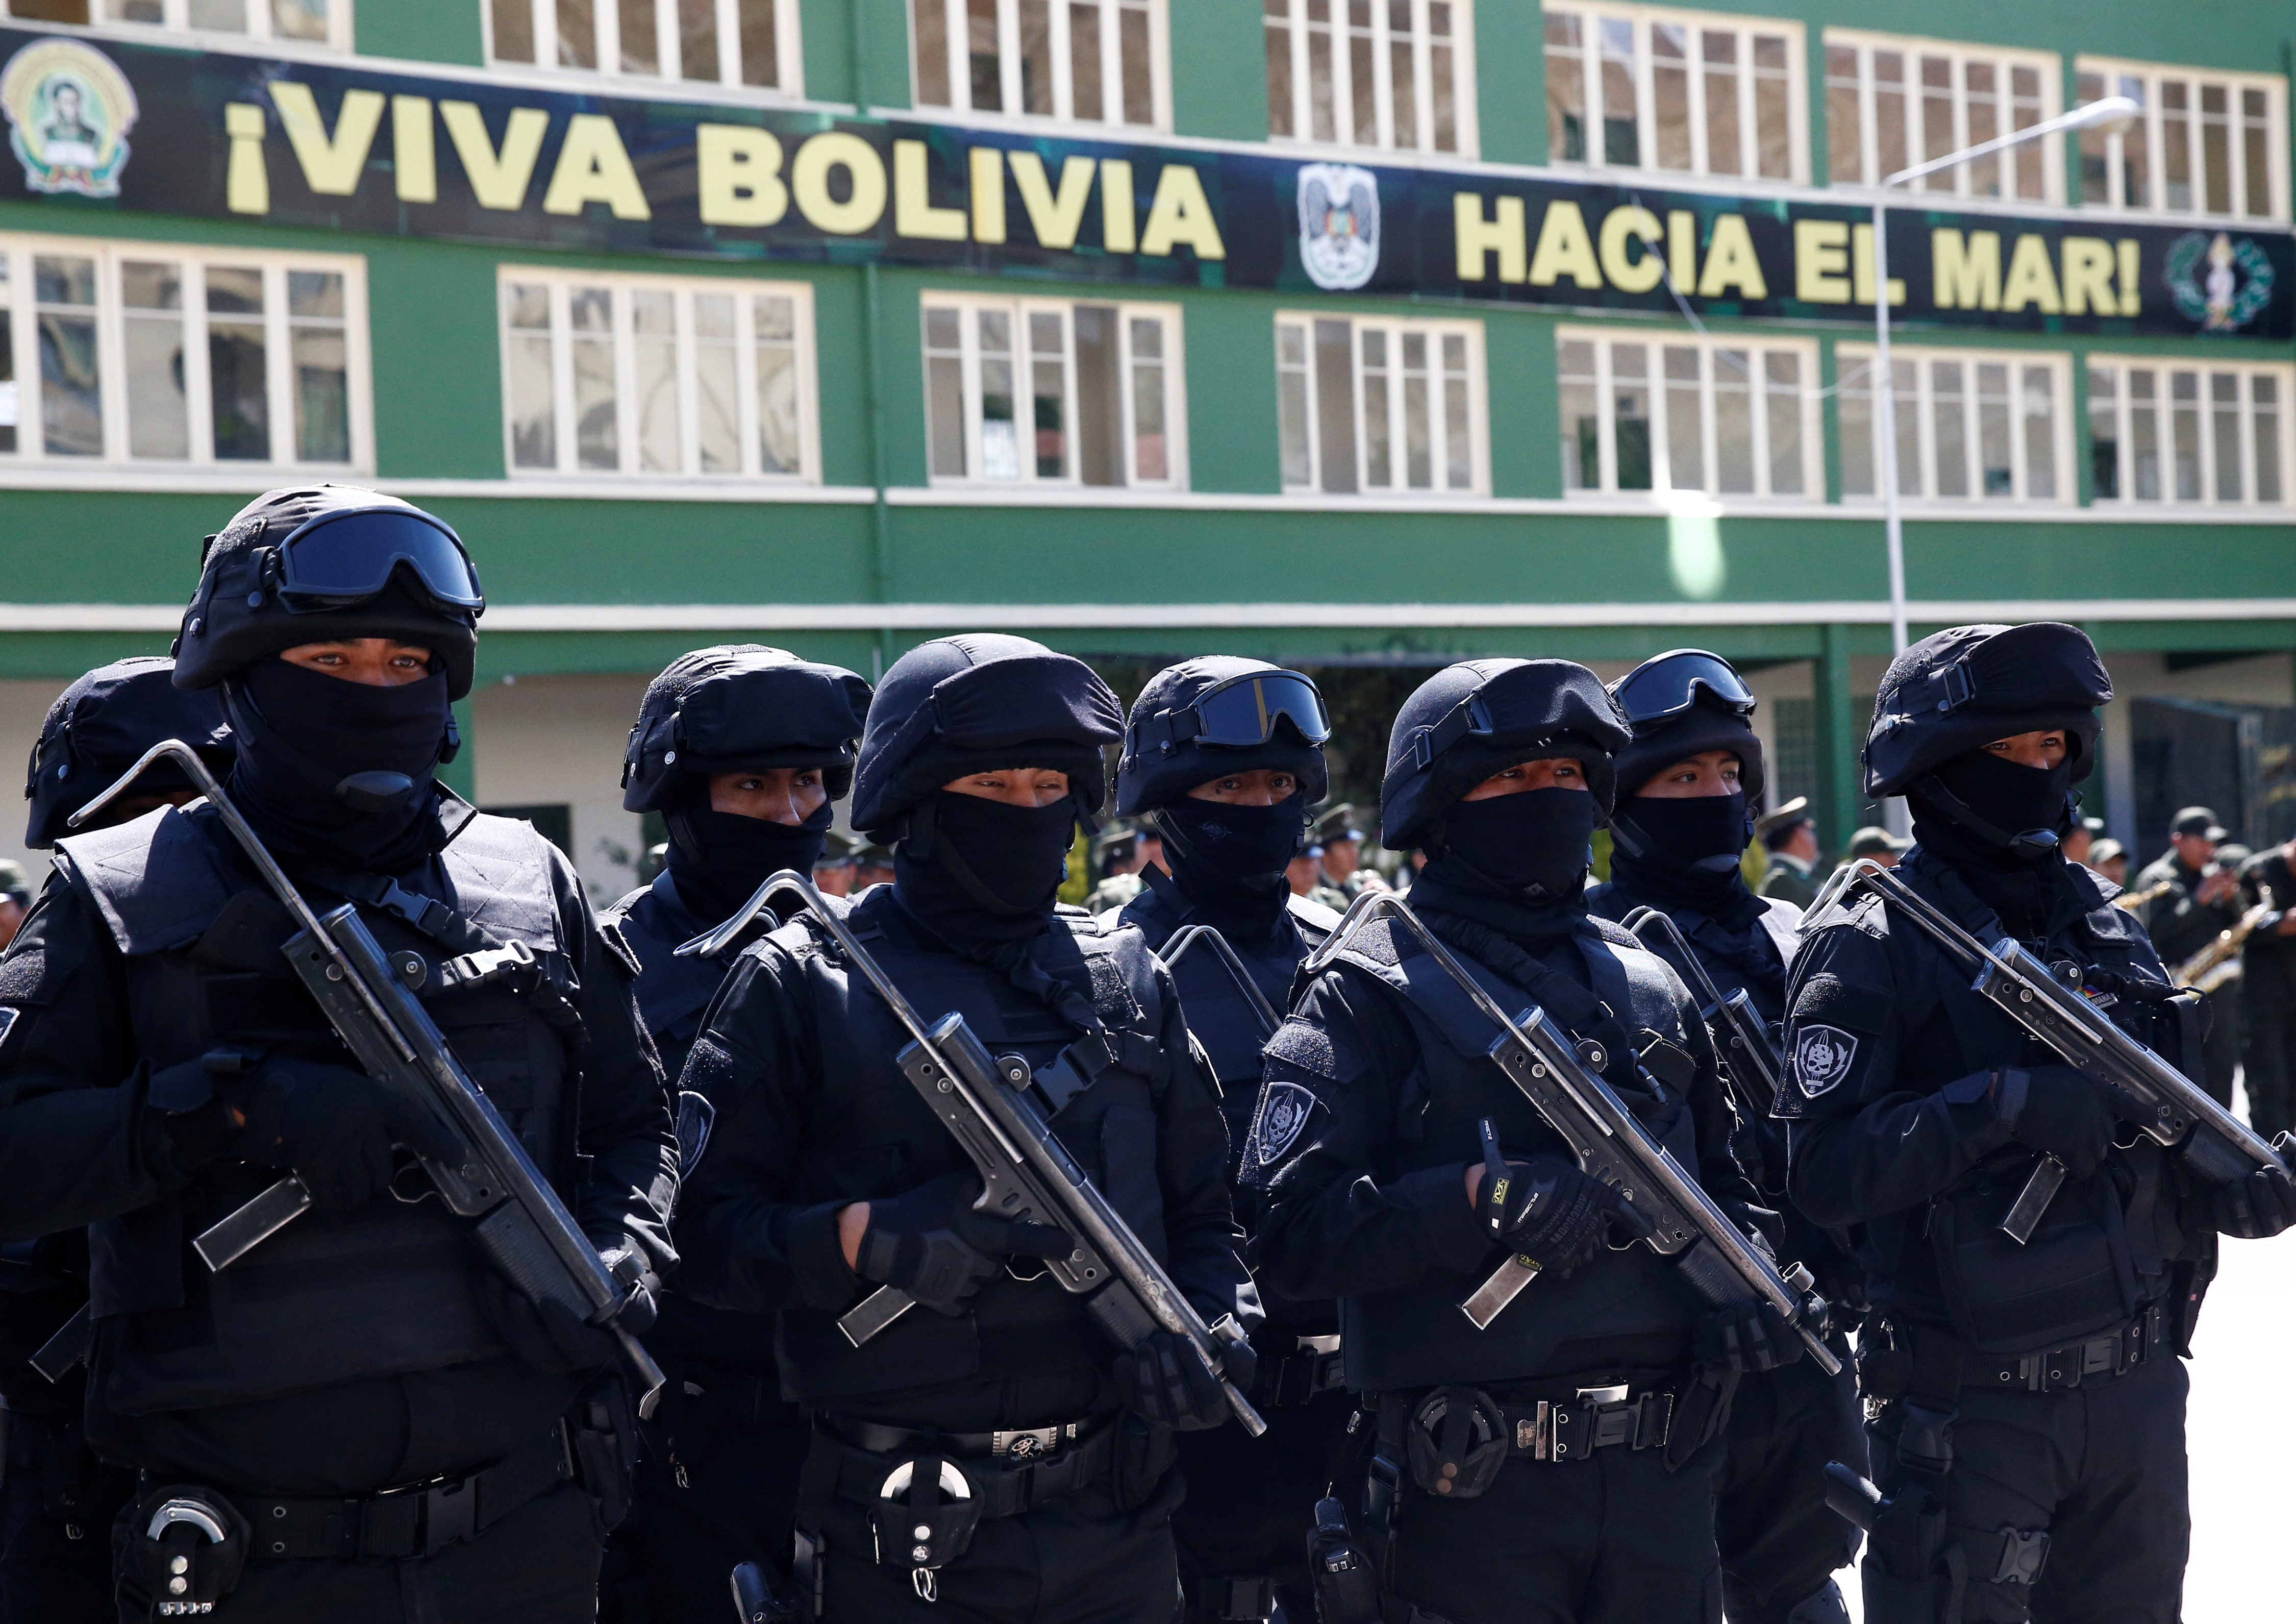 Την βοήθεια του Ισραήλ θέλει η Βολιβία για θέματα “τρομοκρατίας”